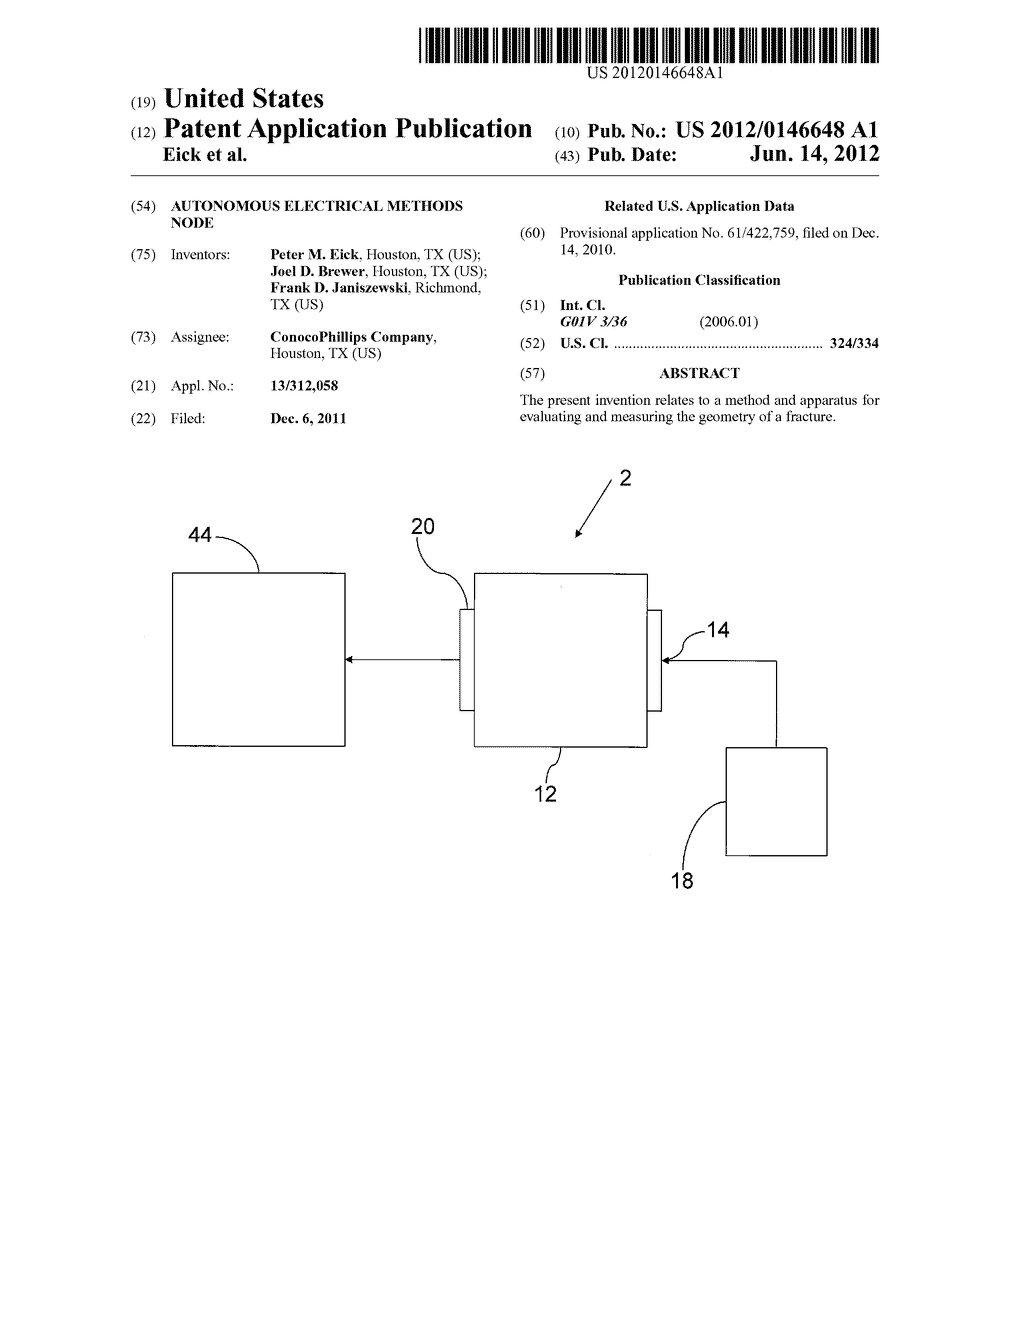 AUTONOMOUS ELECTRICAL METHODS NODE - diagram, schematic, and image 01